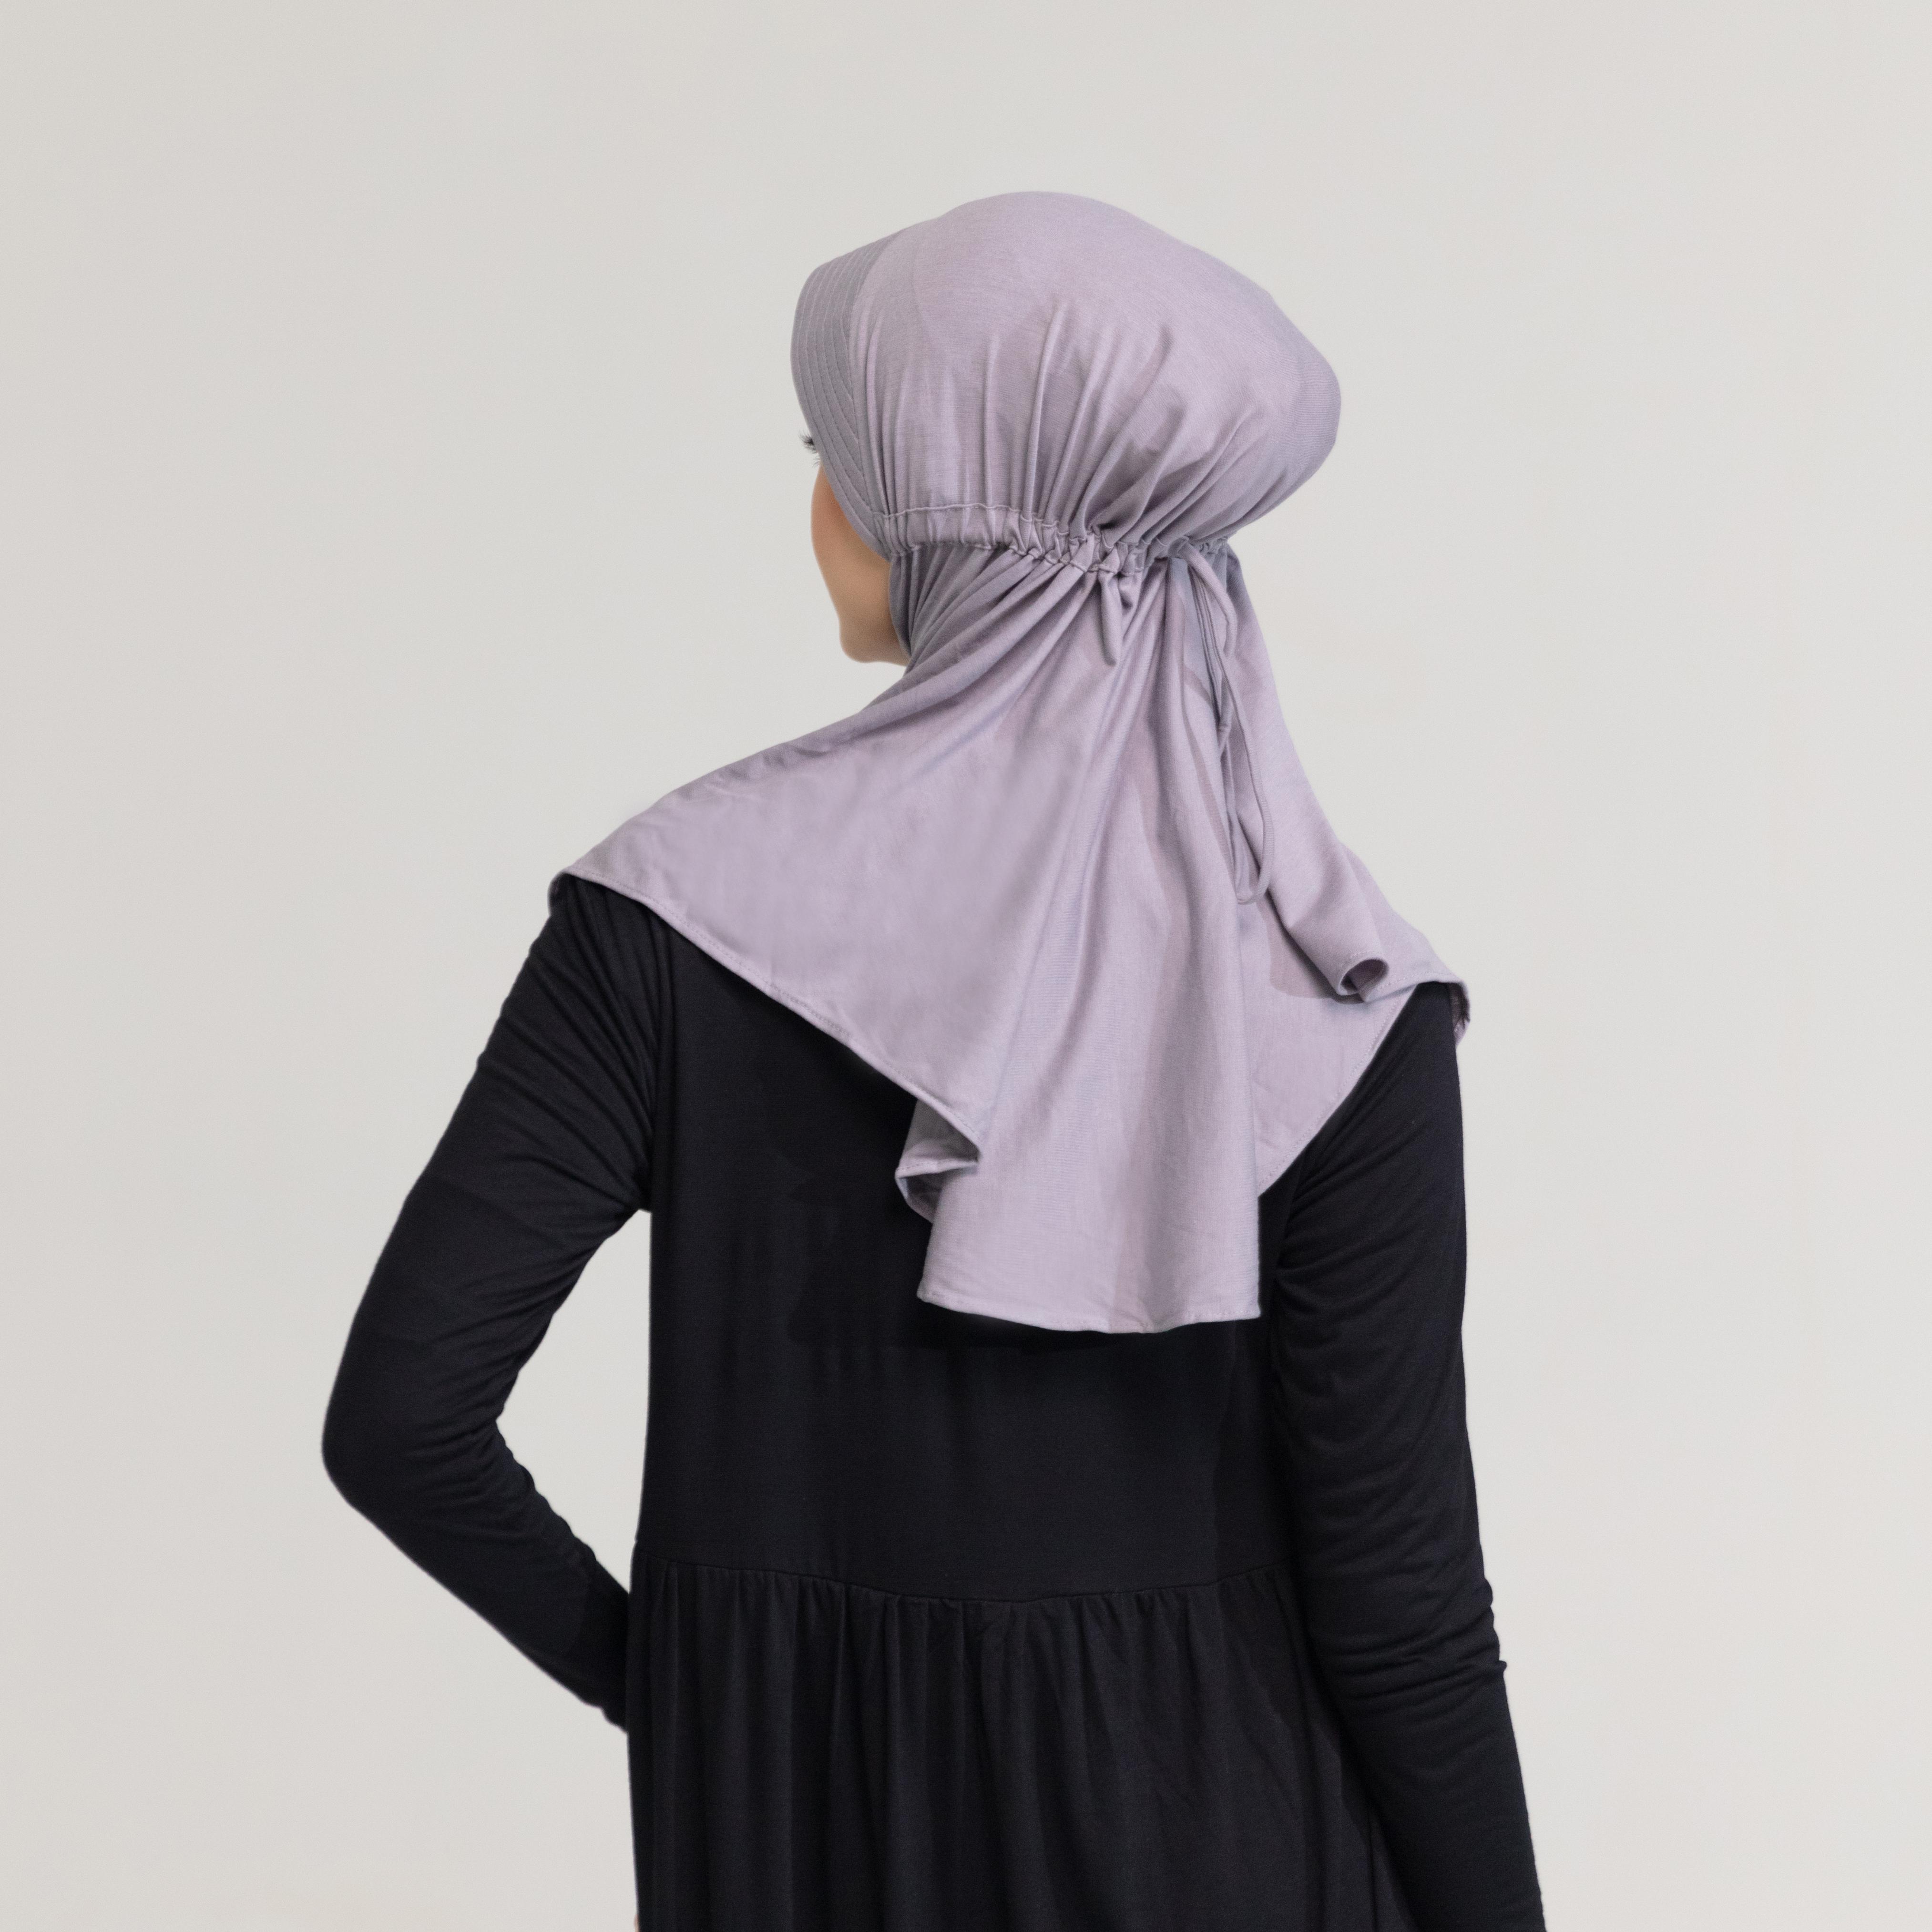 DAUKY -  Hijab Bergo Jilbab Basic Polos Kaos Rara - Abu Muda